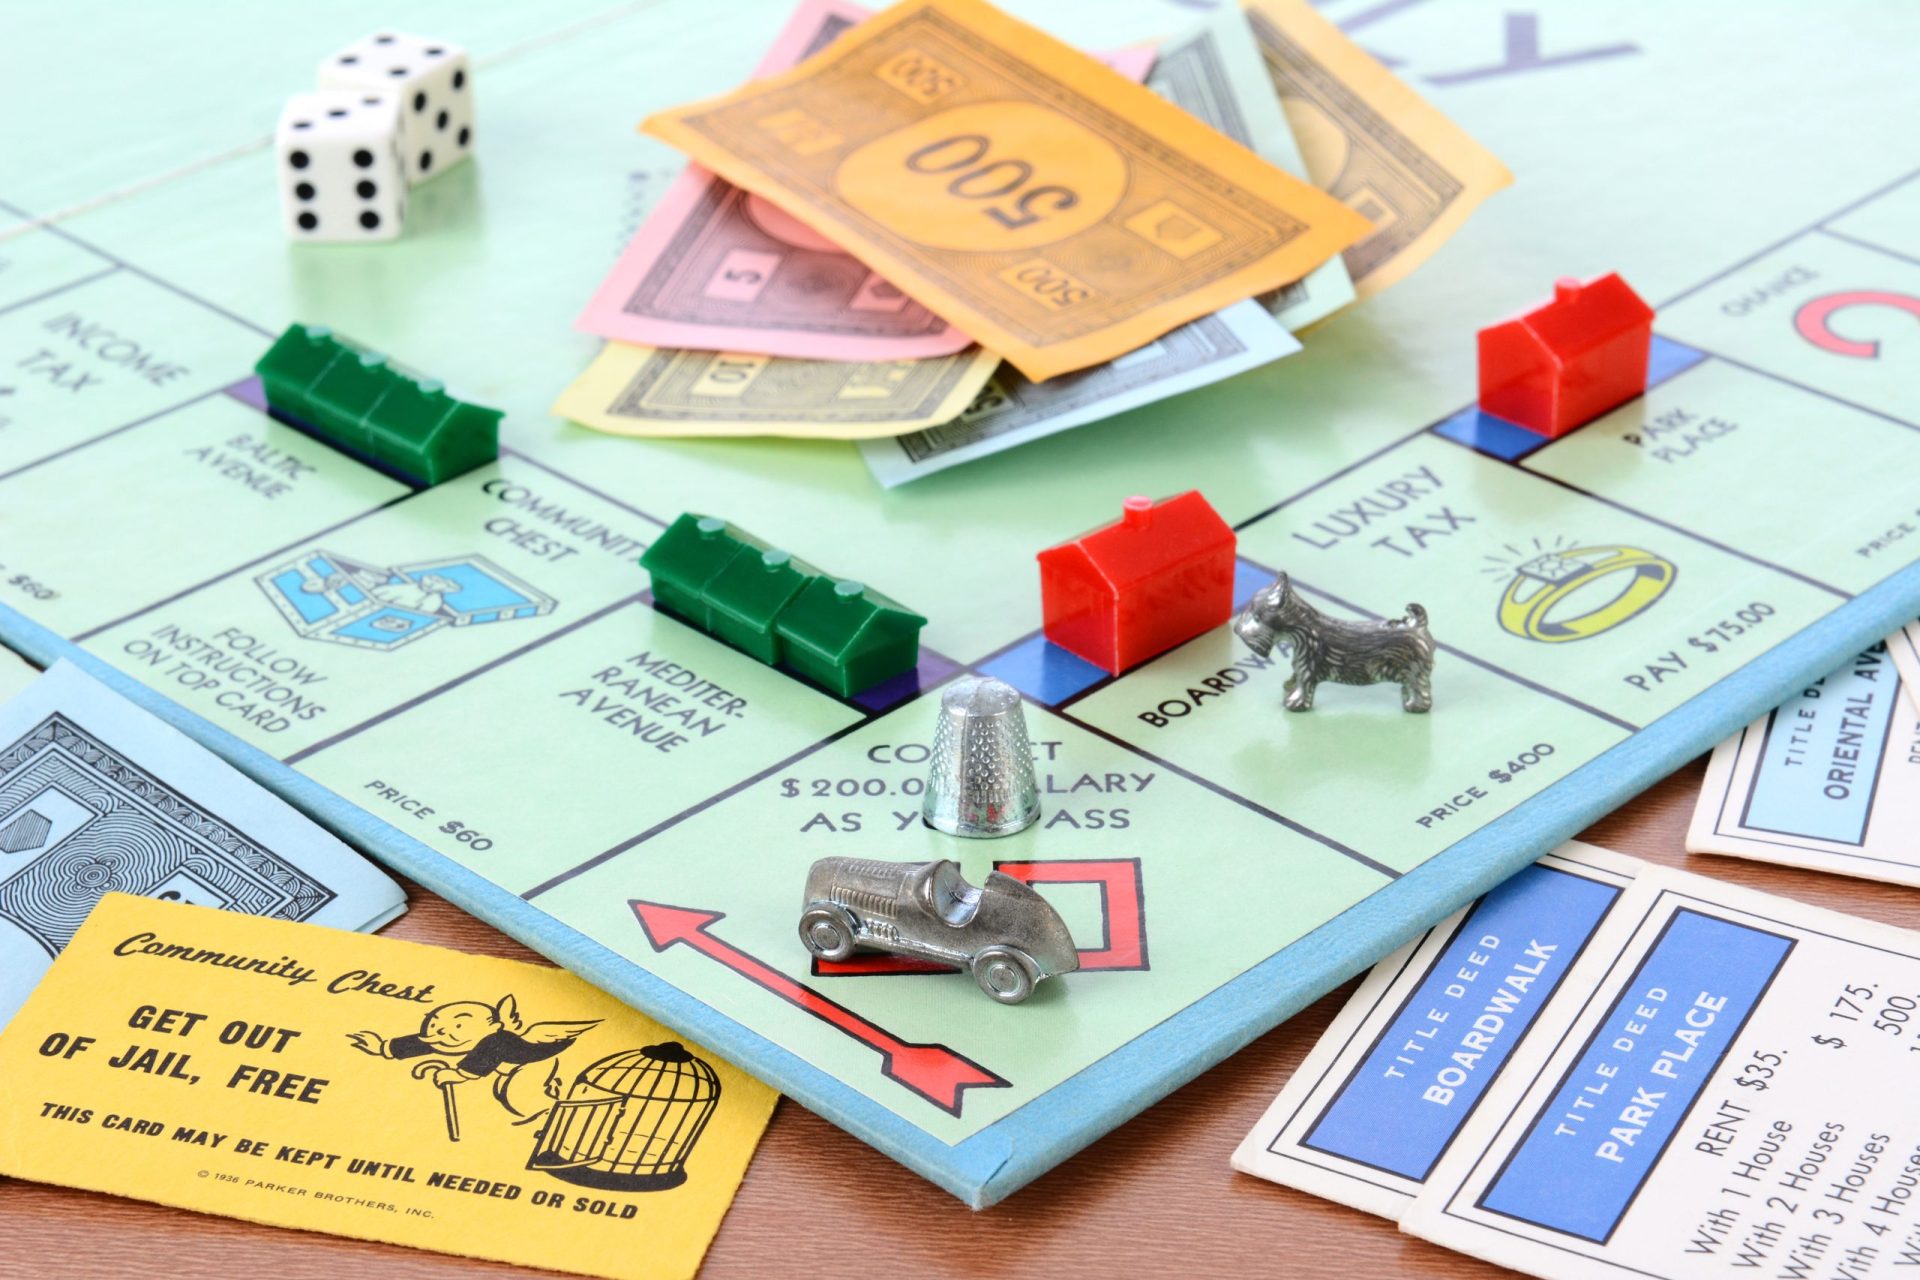 Monopoly mundial: Lisboa entra e fica antes da Casa Partida